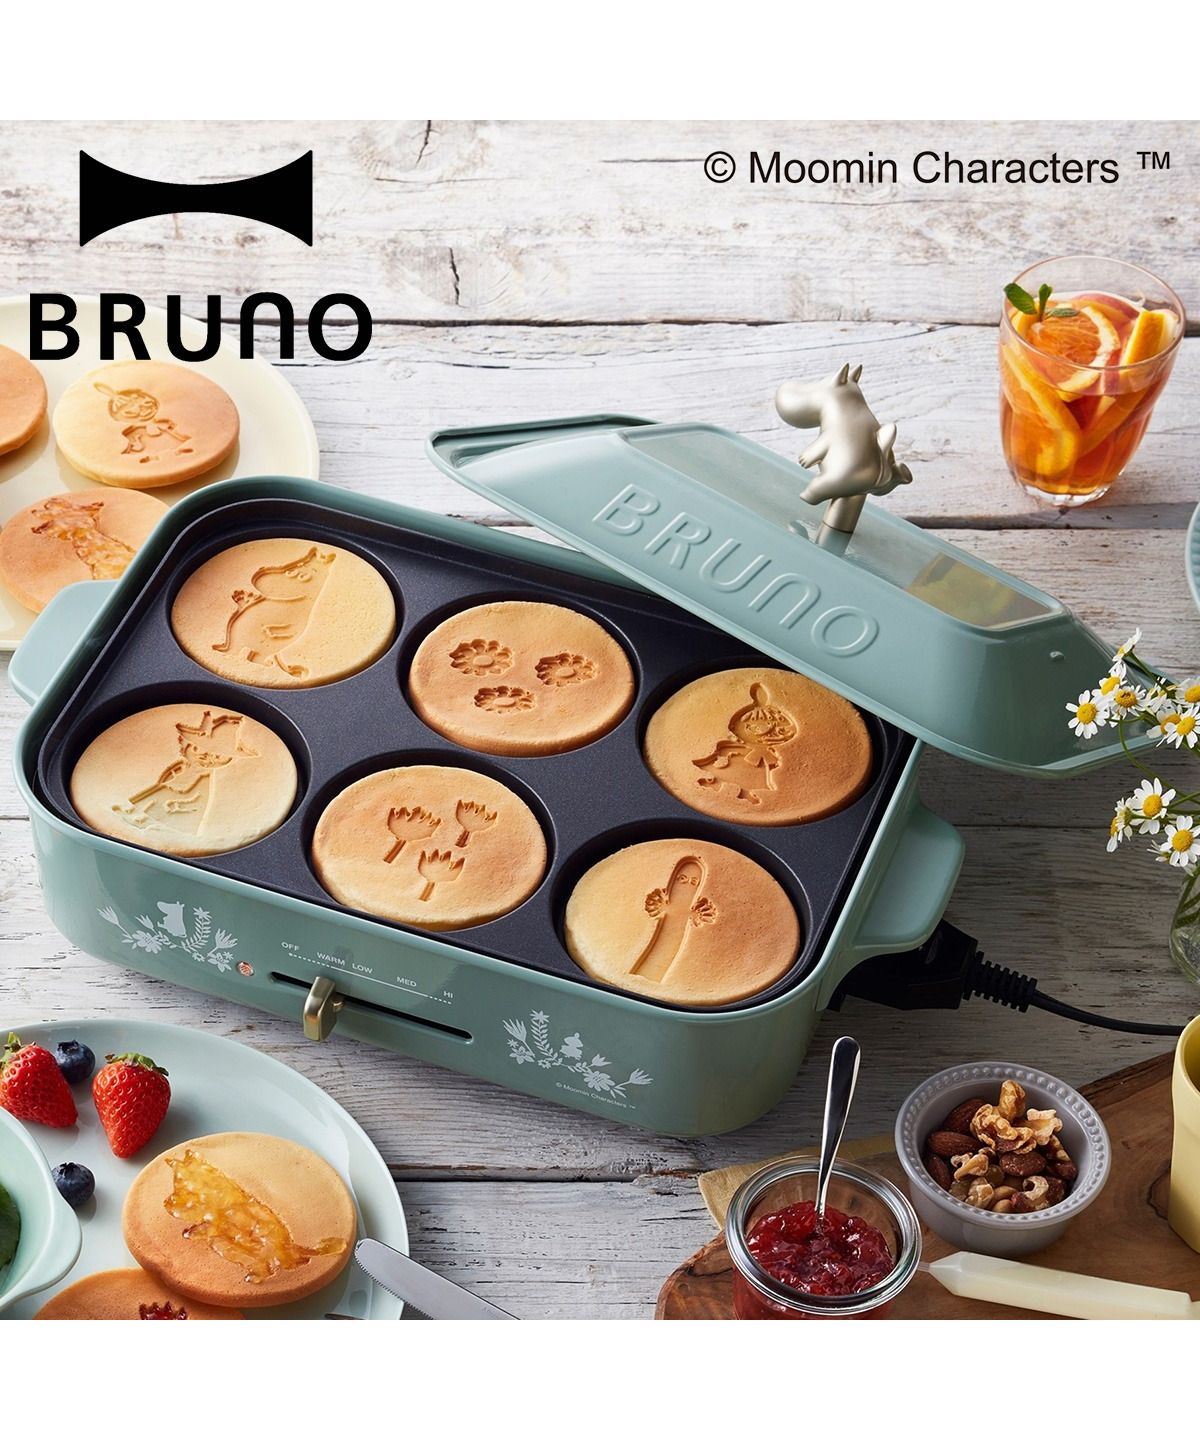 BRUNO ブルーノ ホットプレート ムーミン たこ焼き器 焼肉 パンケーキ コンパクト グッズ 平面 電気式 ヒーター式 レシピブック 1200W  小型 小さ